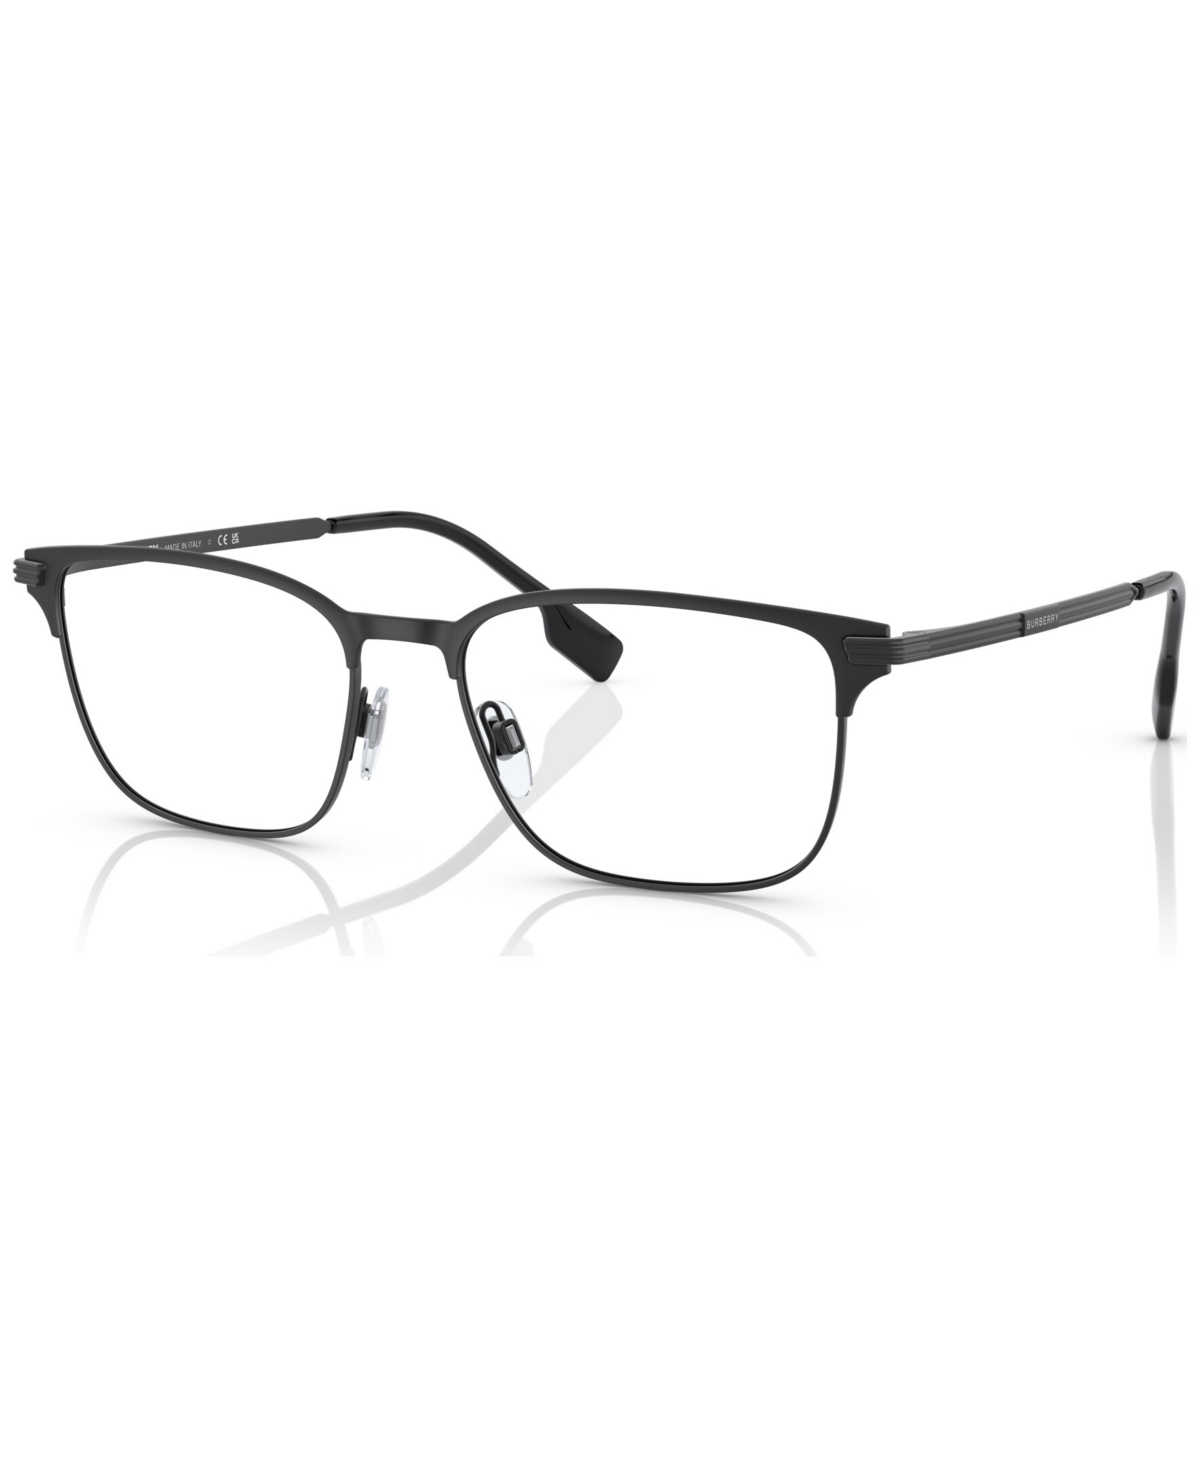 Men's Rectangle Eyeglasses, BE137255-o - Black